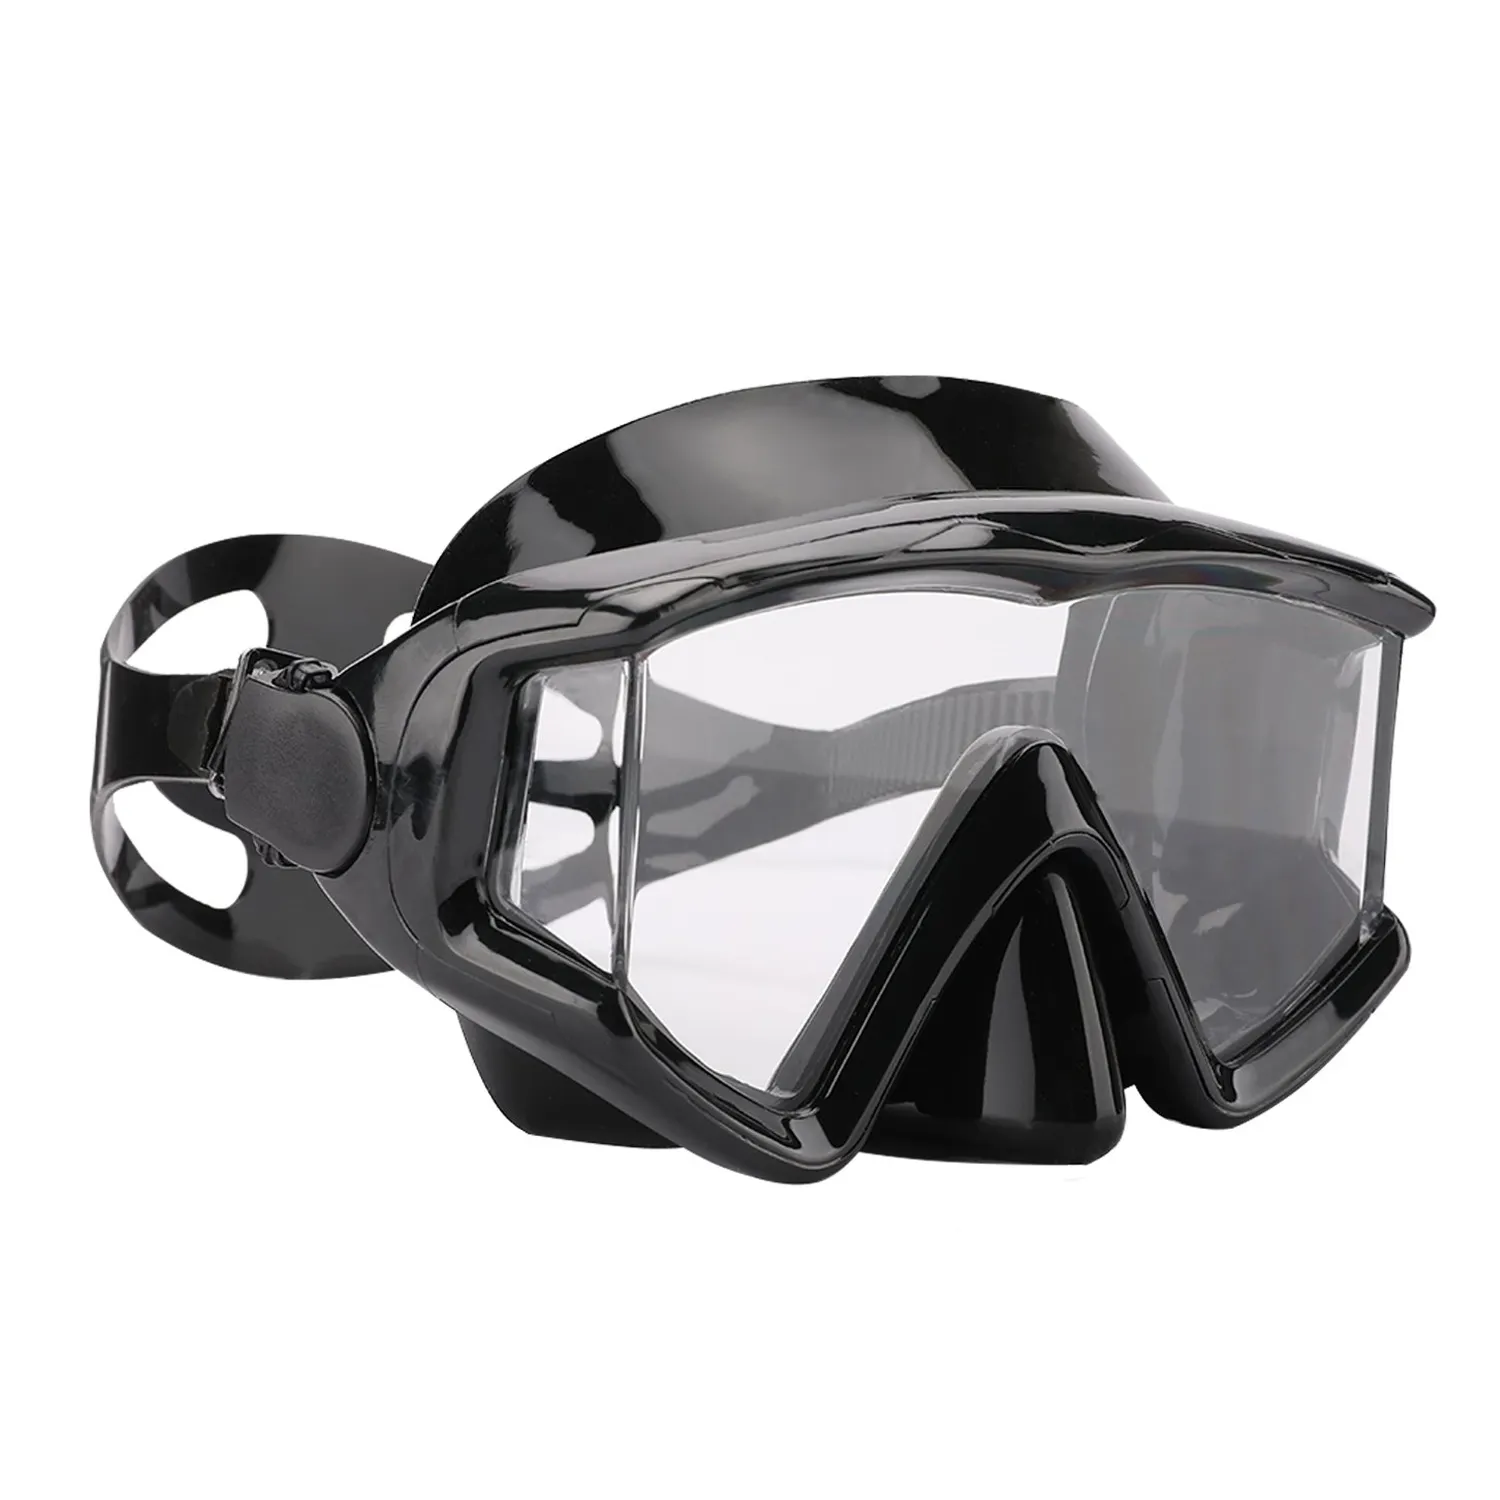 Occhiali professionali per apnea per adulti 3 vista panoramica Scuba Diving HD lente in vetro temperato Snorkeling maschera subacquea